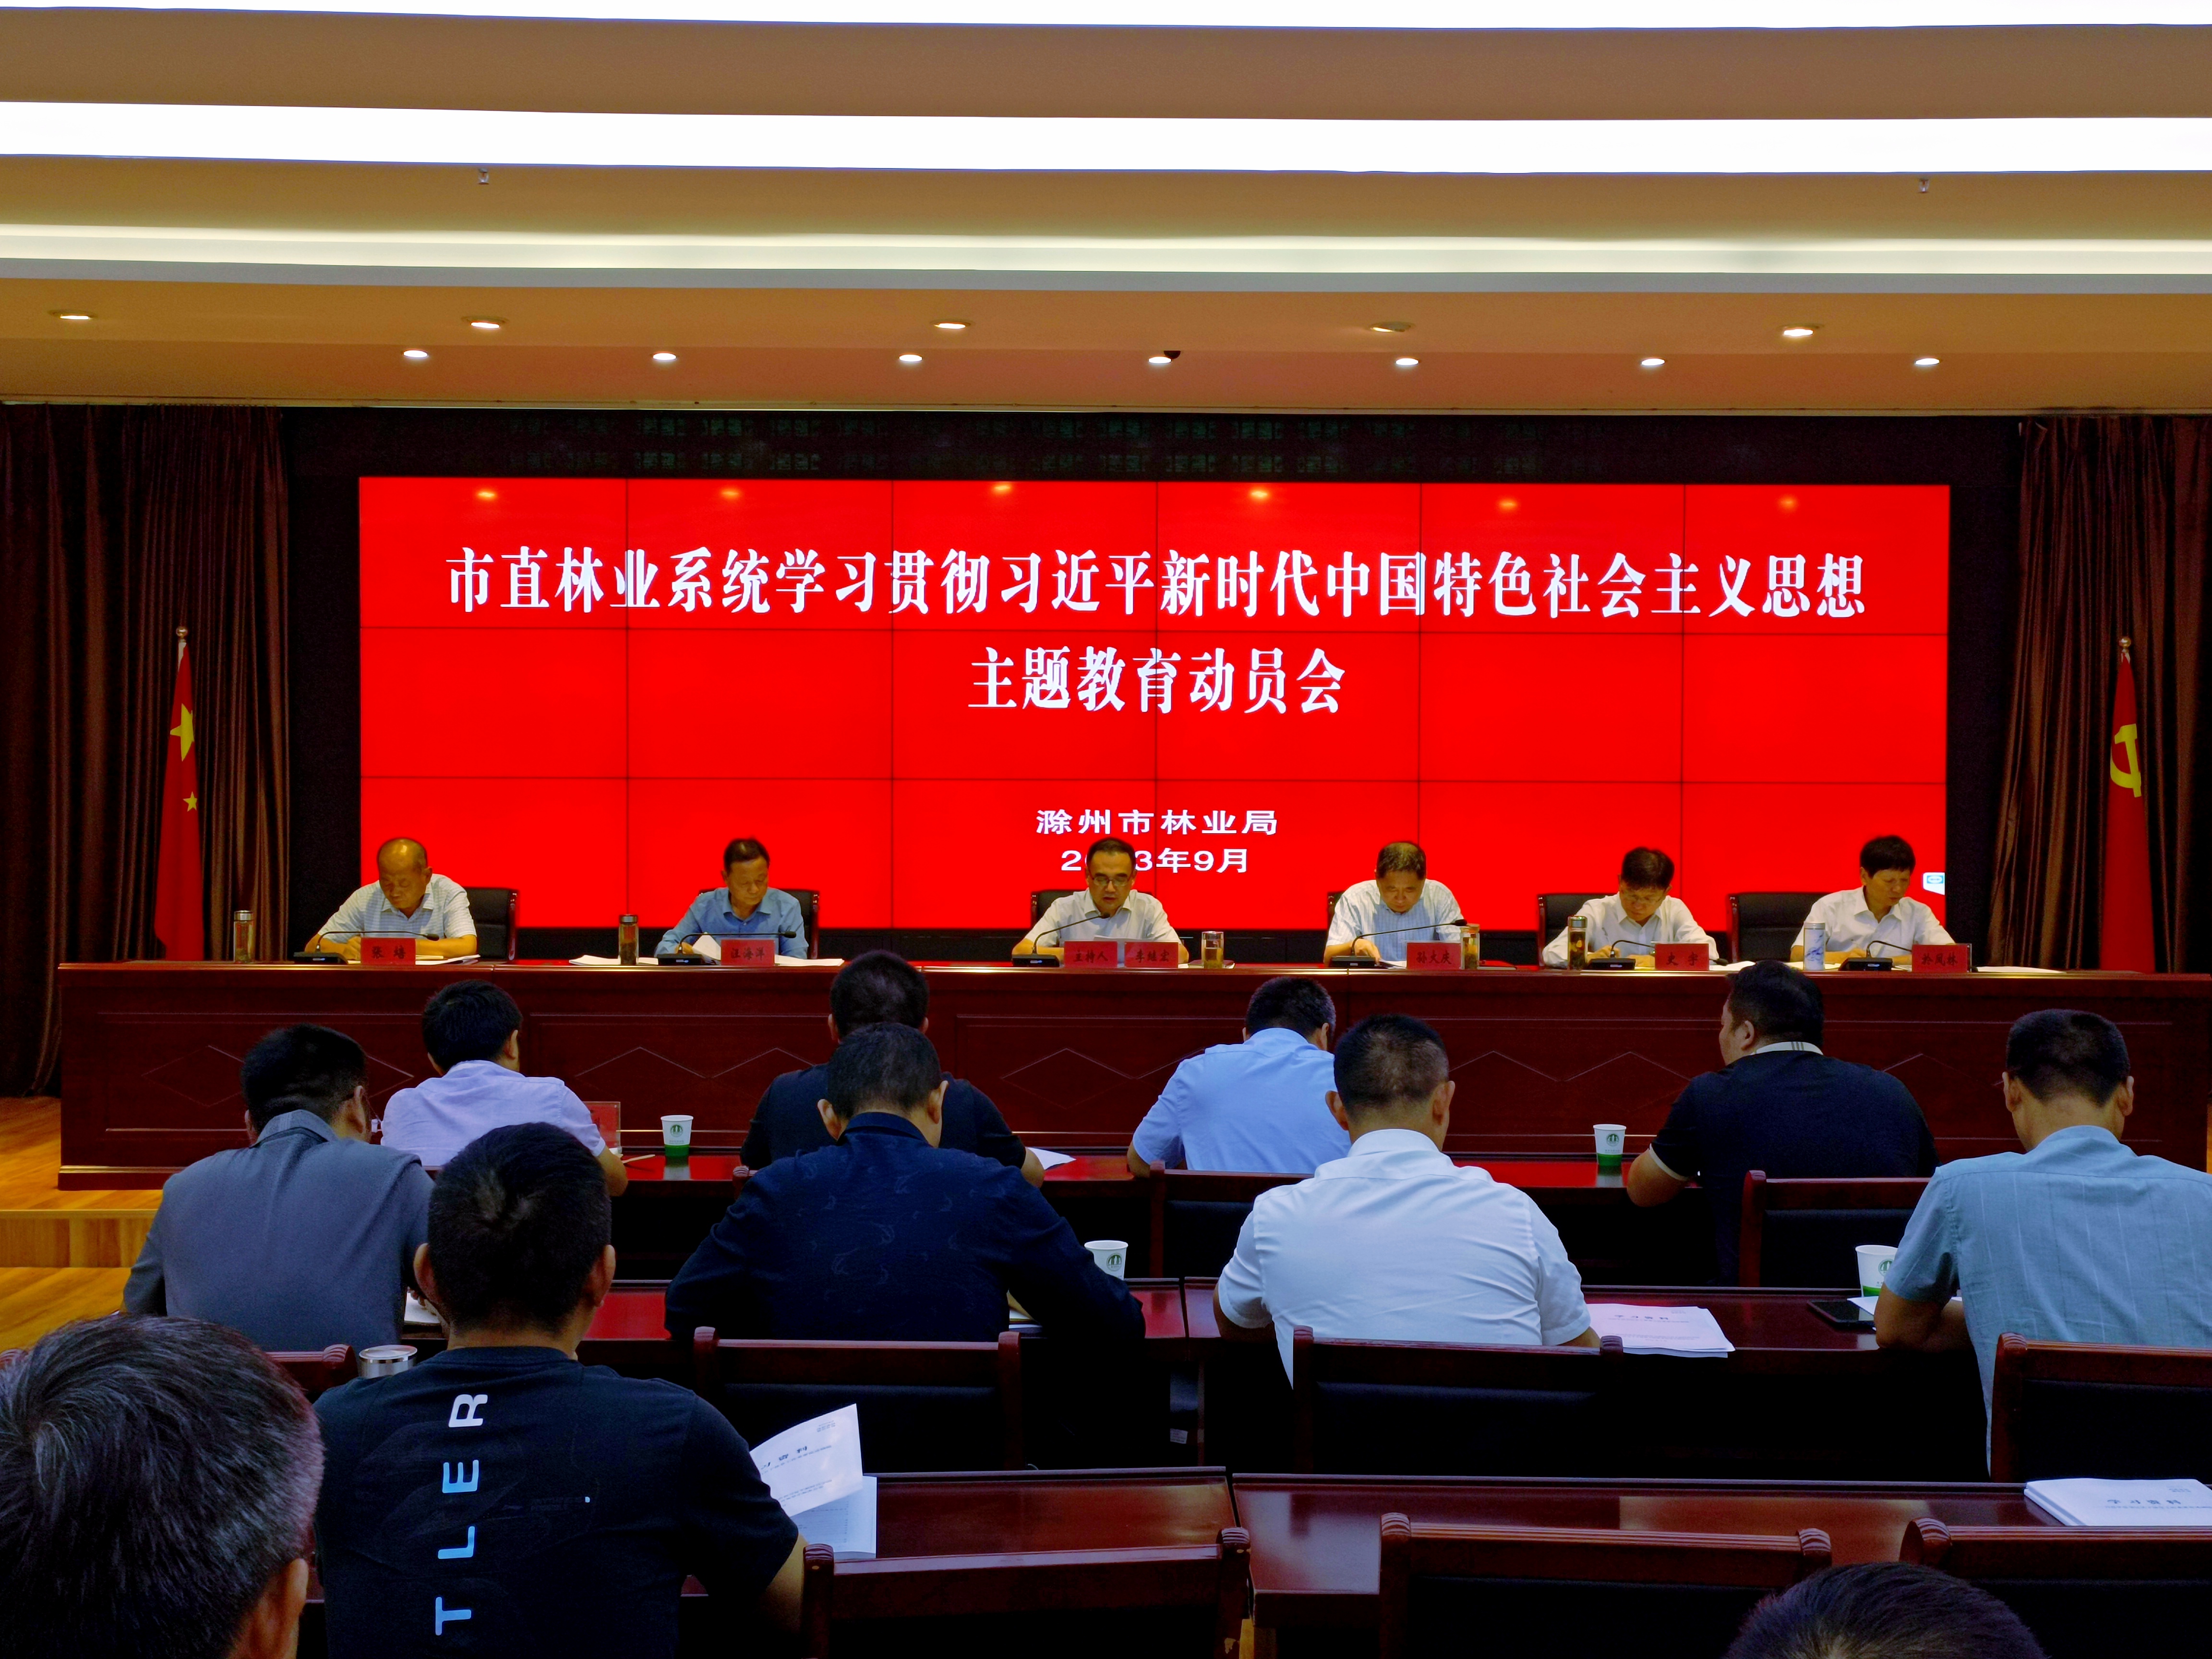 市直林业系统召开学习贯彻习近平新时代中国特色社会主义思想主题教育动员会议